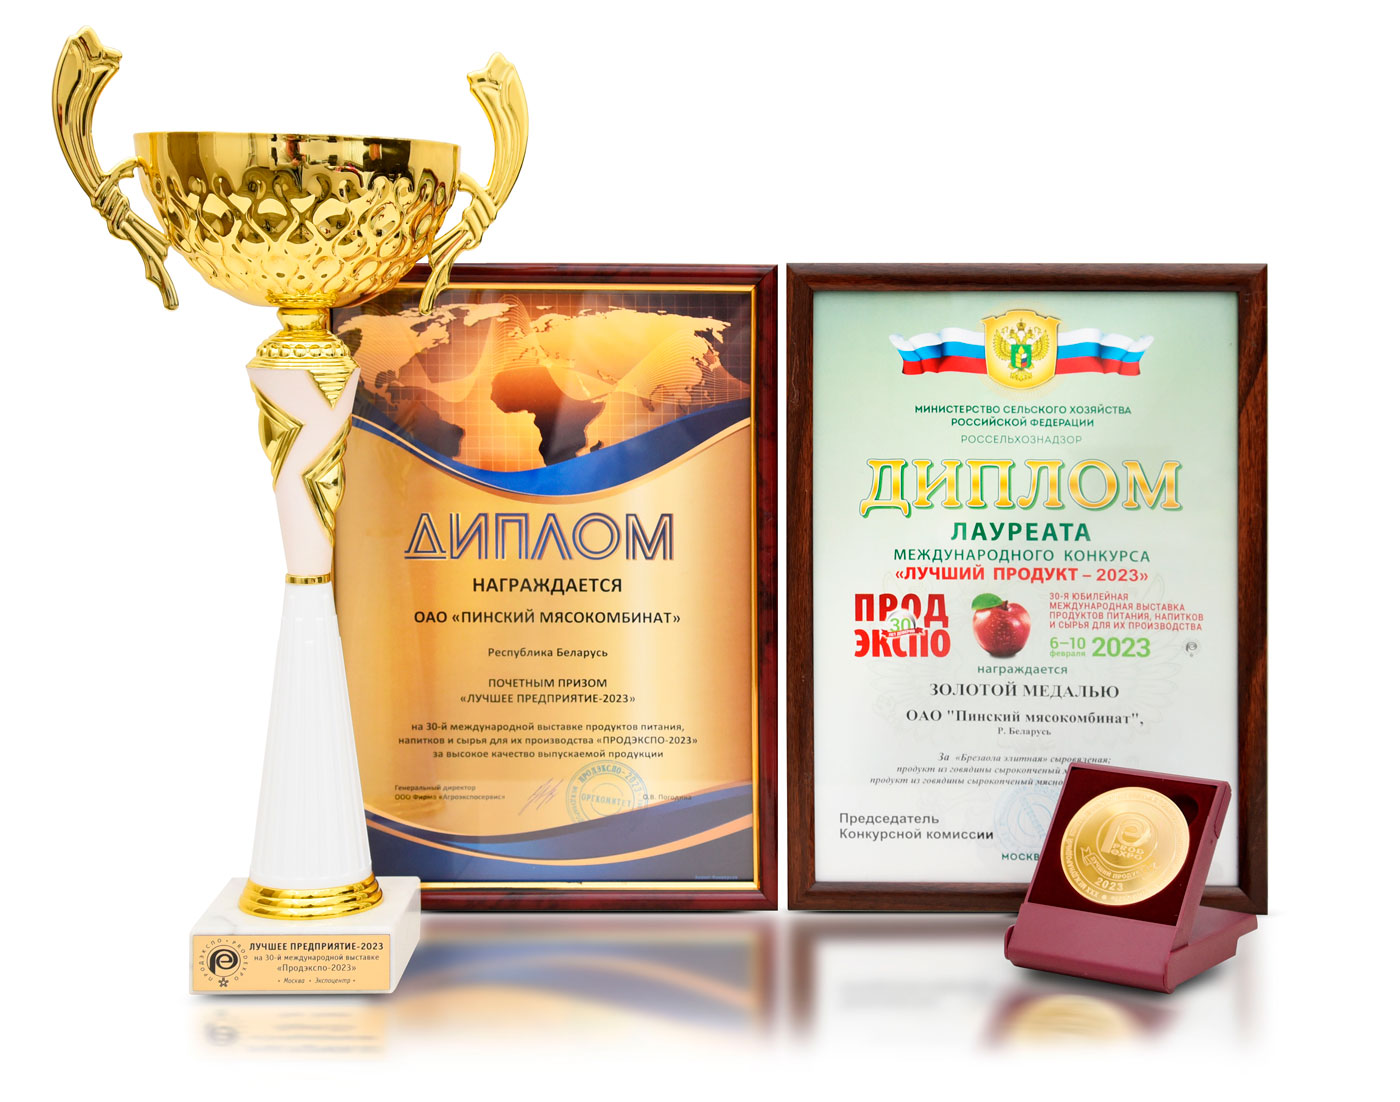 Продукция Пинского мясокомбината отмечена золотой медалью на международной выставке